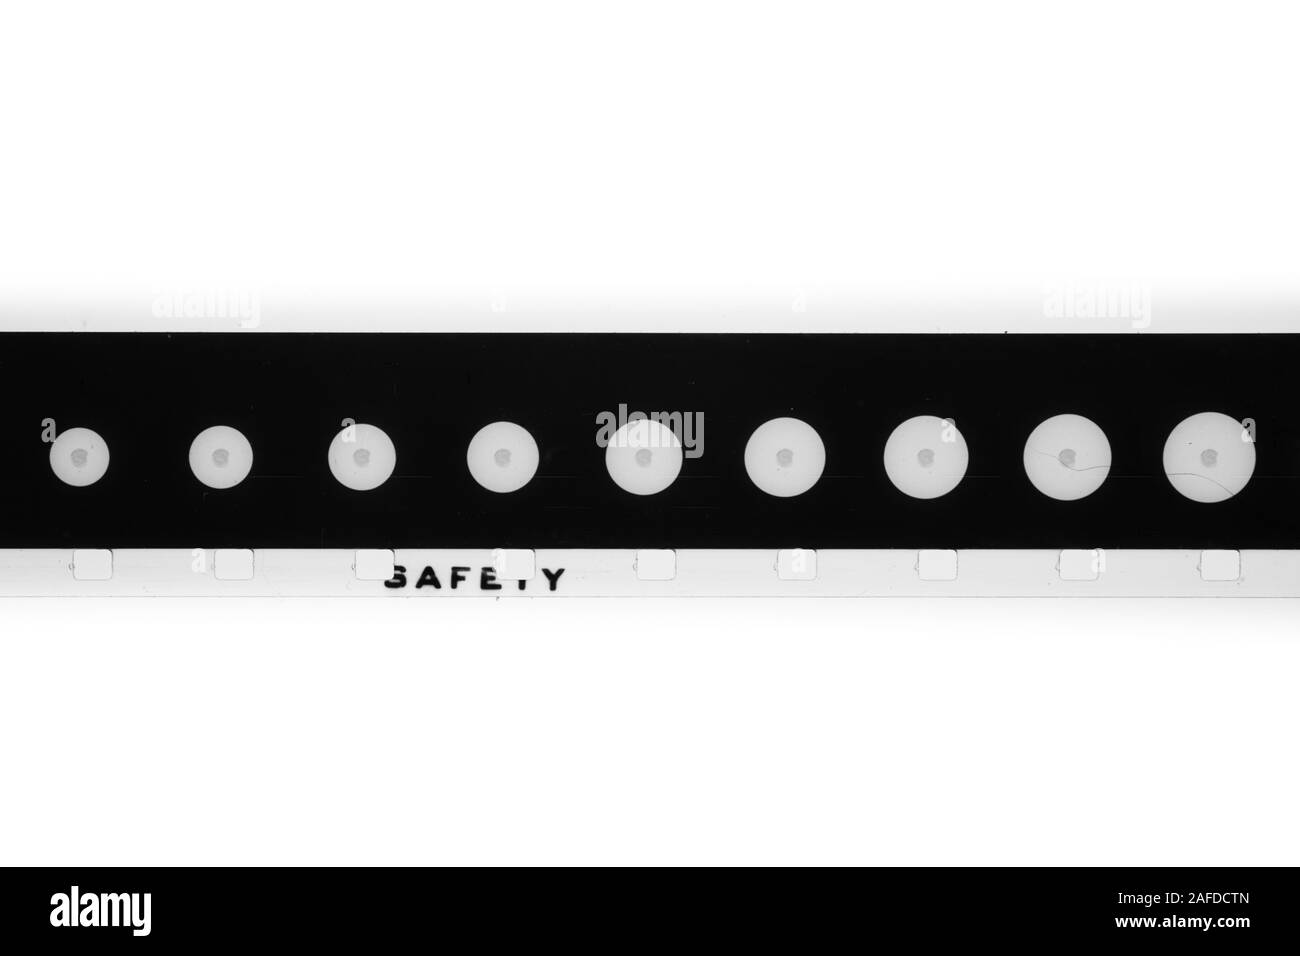 Detail von Super 8 mm Streifen schwarz-weiß Film Führer Schwanz mit runder Form und Sicherheit text auf Perforation gauge Kino Hintergrund Stockfoto